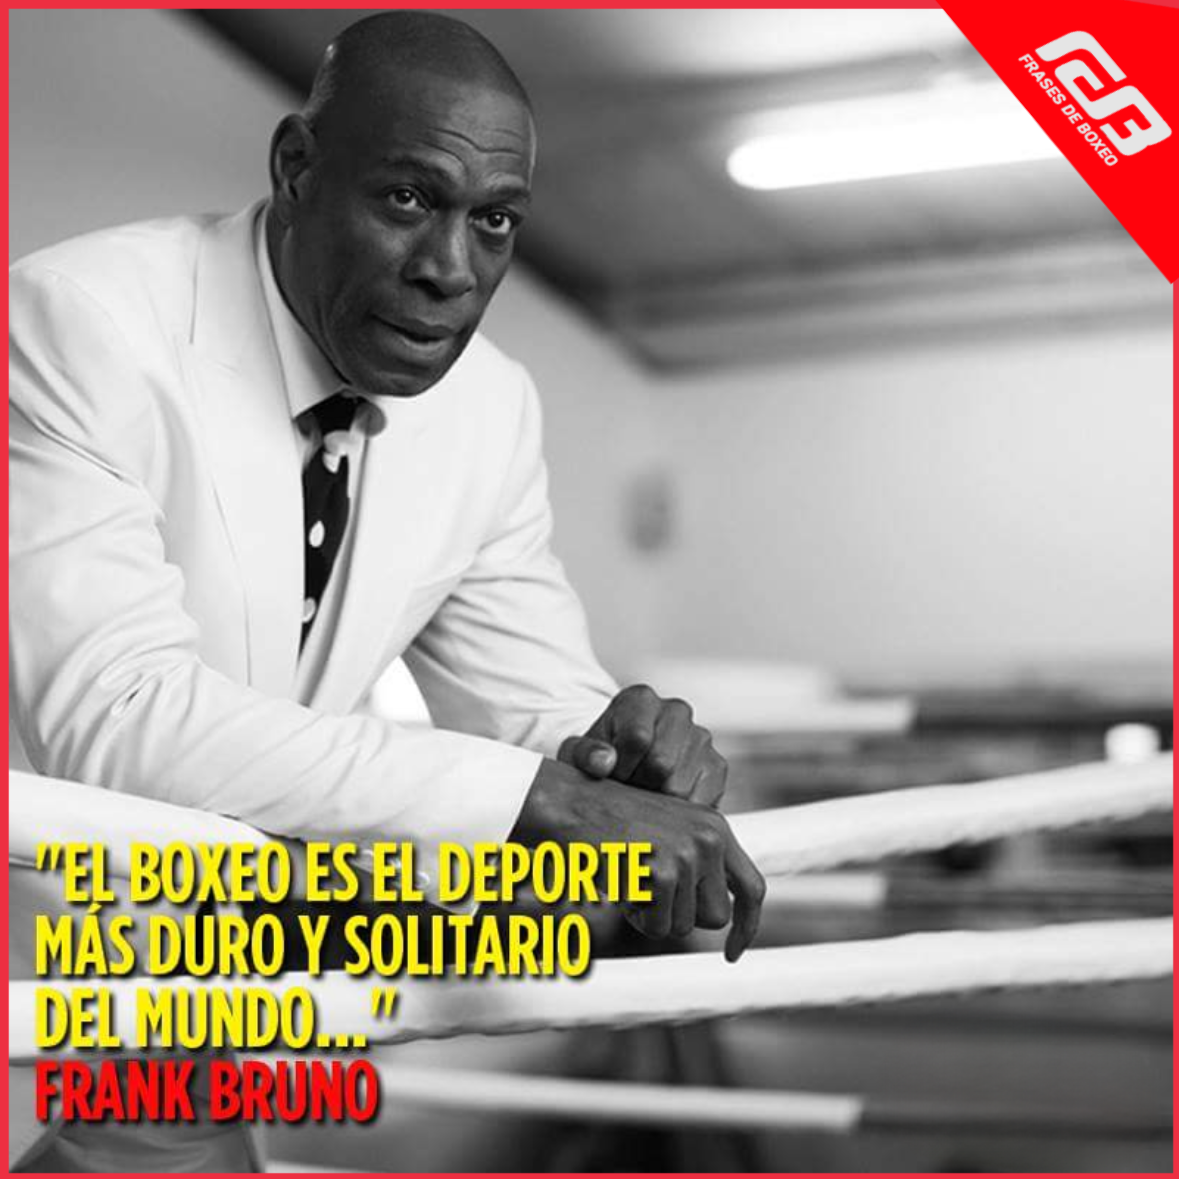 "El boxeo es el más duro y solitario deporte del mundo..." Frank Bruno (Art: Frases de Boxeo)